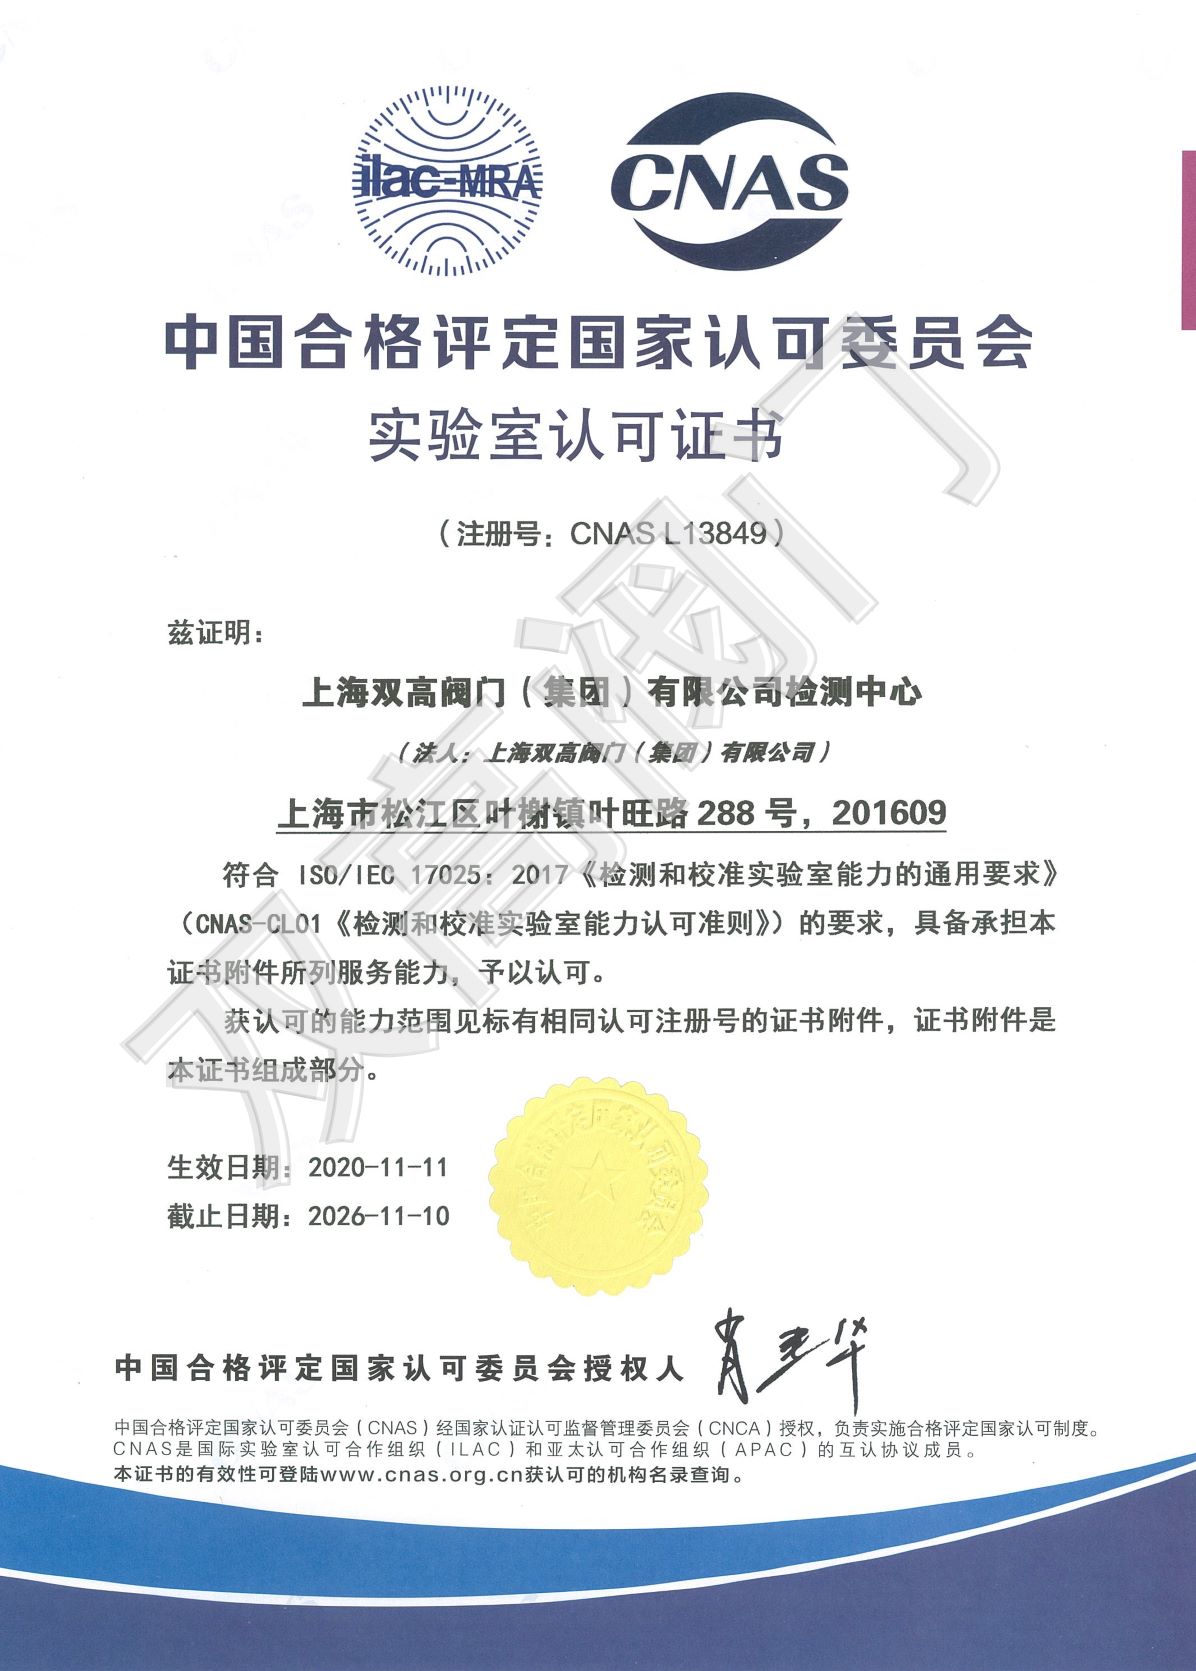 中国合格评定国际认可委员会实验室认可证书副本_副本1.jpg